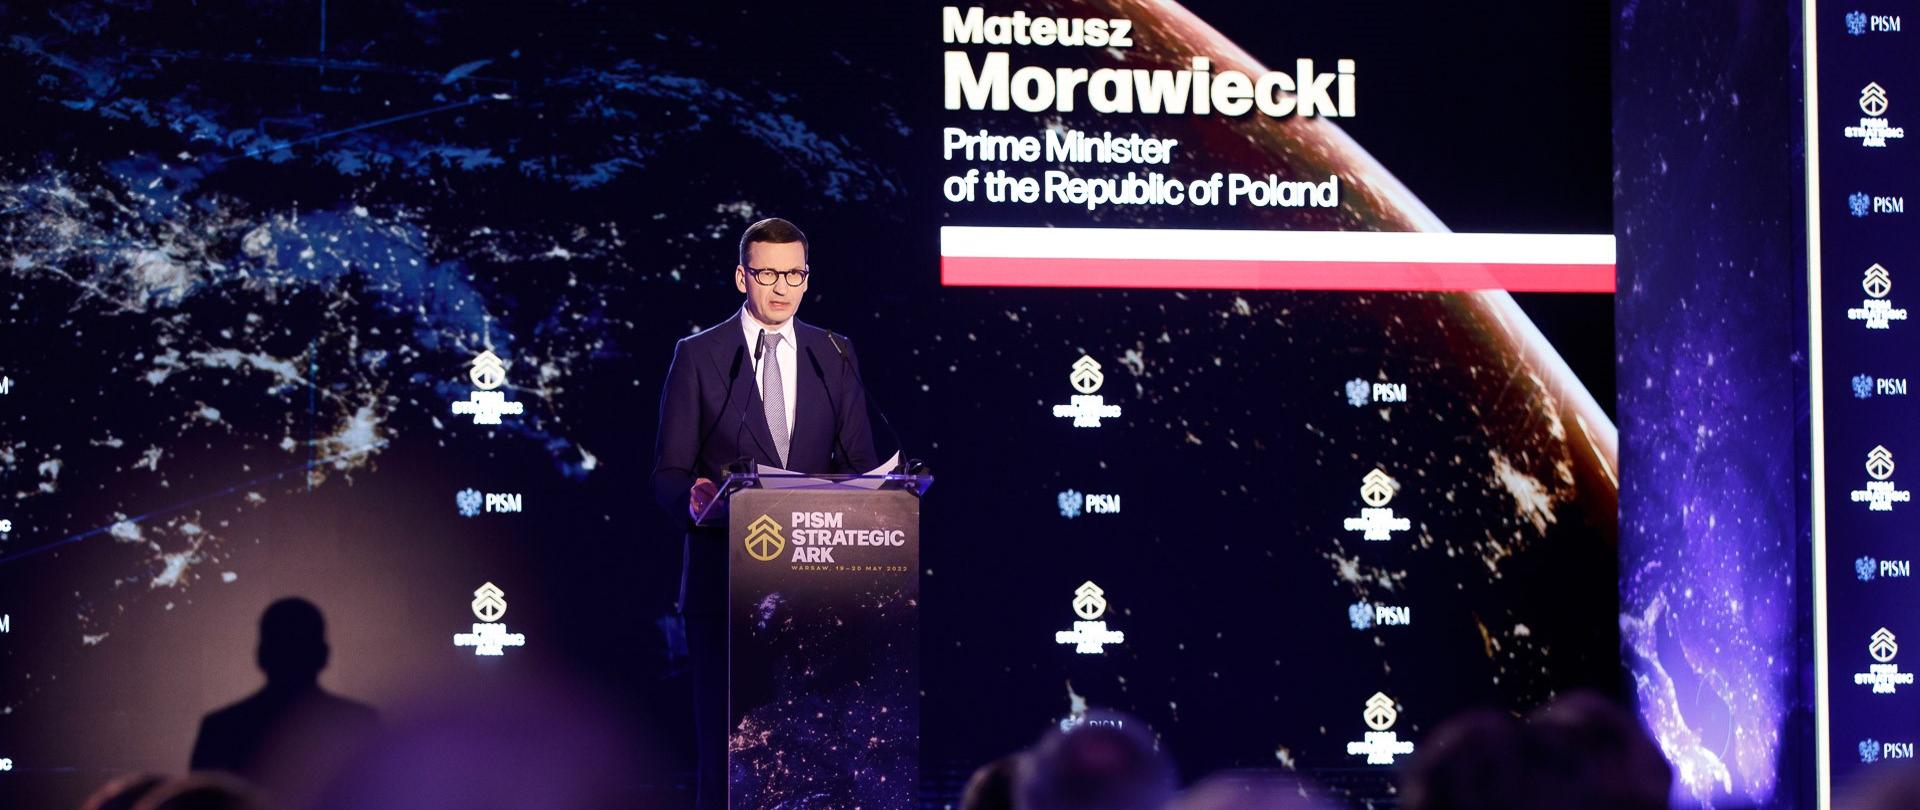 Premier Mateusz Morawiecki przemawia podczas konferencji Strategic Ark